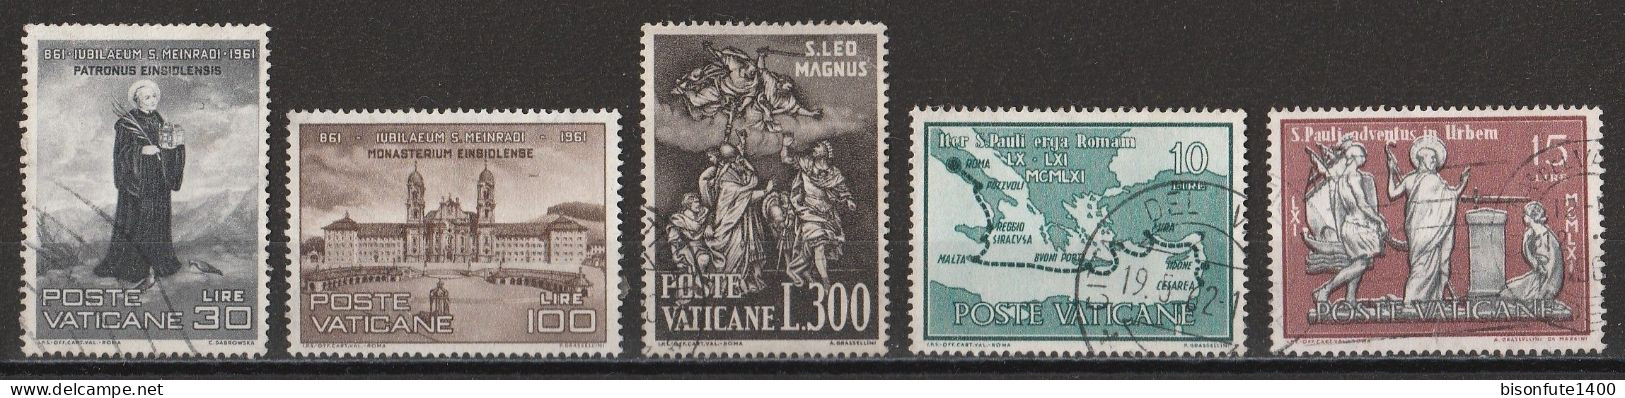 Vatican 1961 : Timbres Yvert & Tellier N° 316 - 317 - 321 - 322 - 323 - 329 - 331 - 332 - 336 Et 343 Oblitérés. - Gebruikt